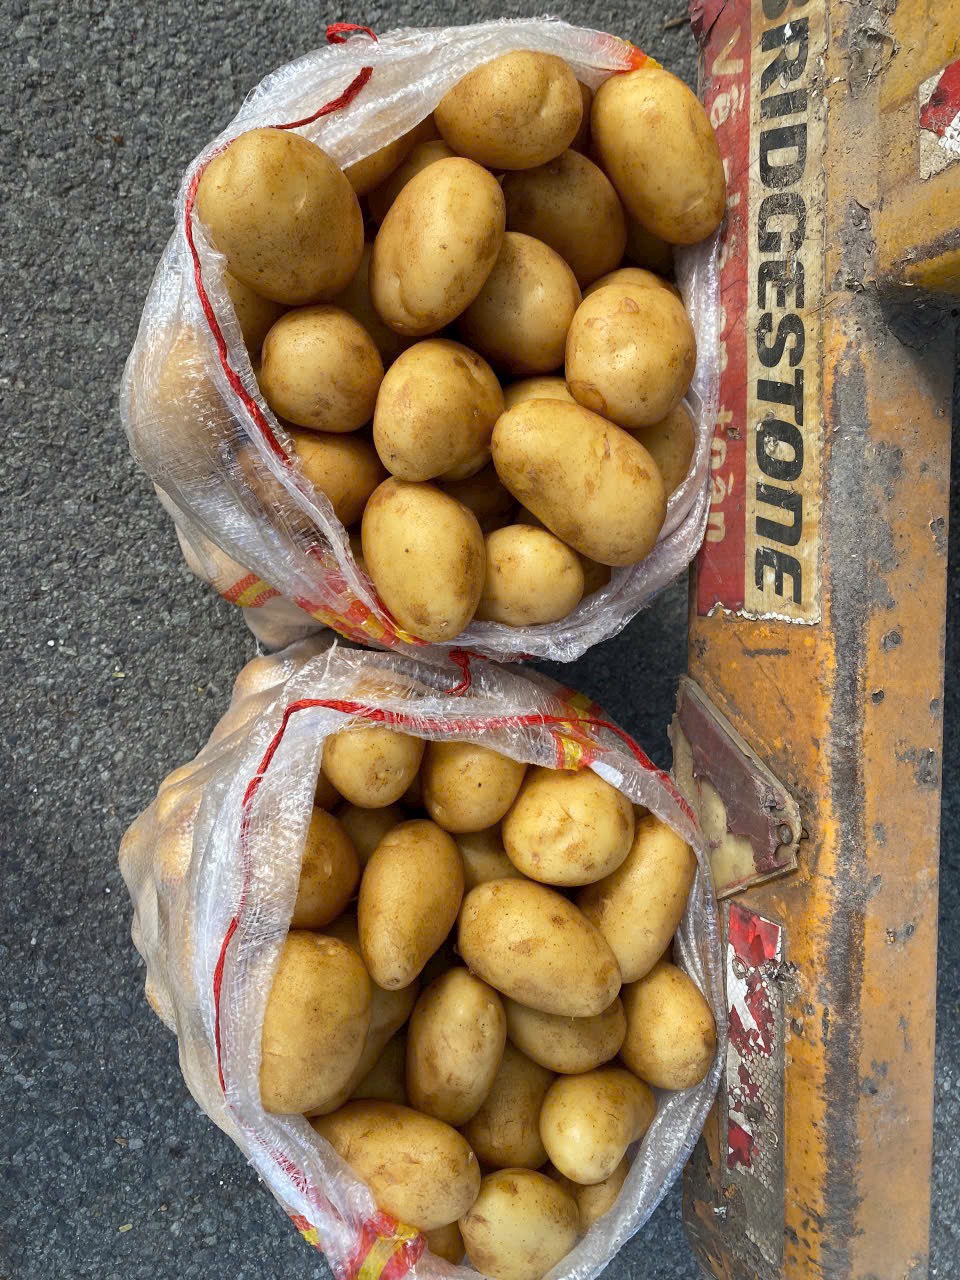 Cần tìm cước vận chuyển hàng khoai tây đi Sri Lanka